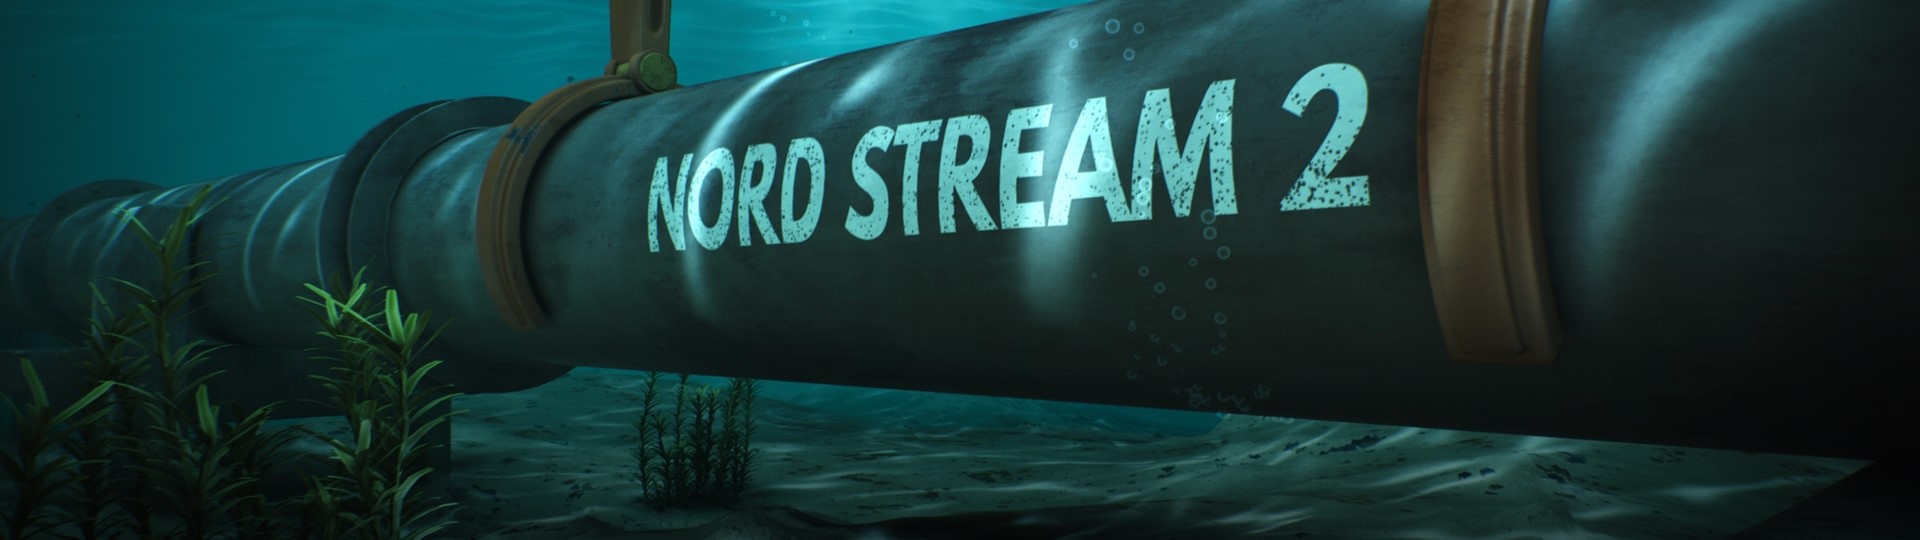 Plynovod Nord Stream 2 je hotov, oznámil Gazprom